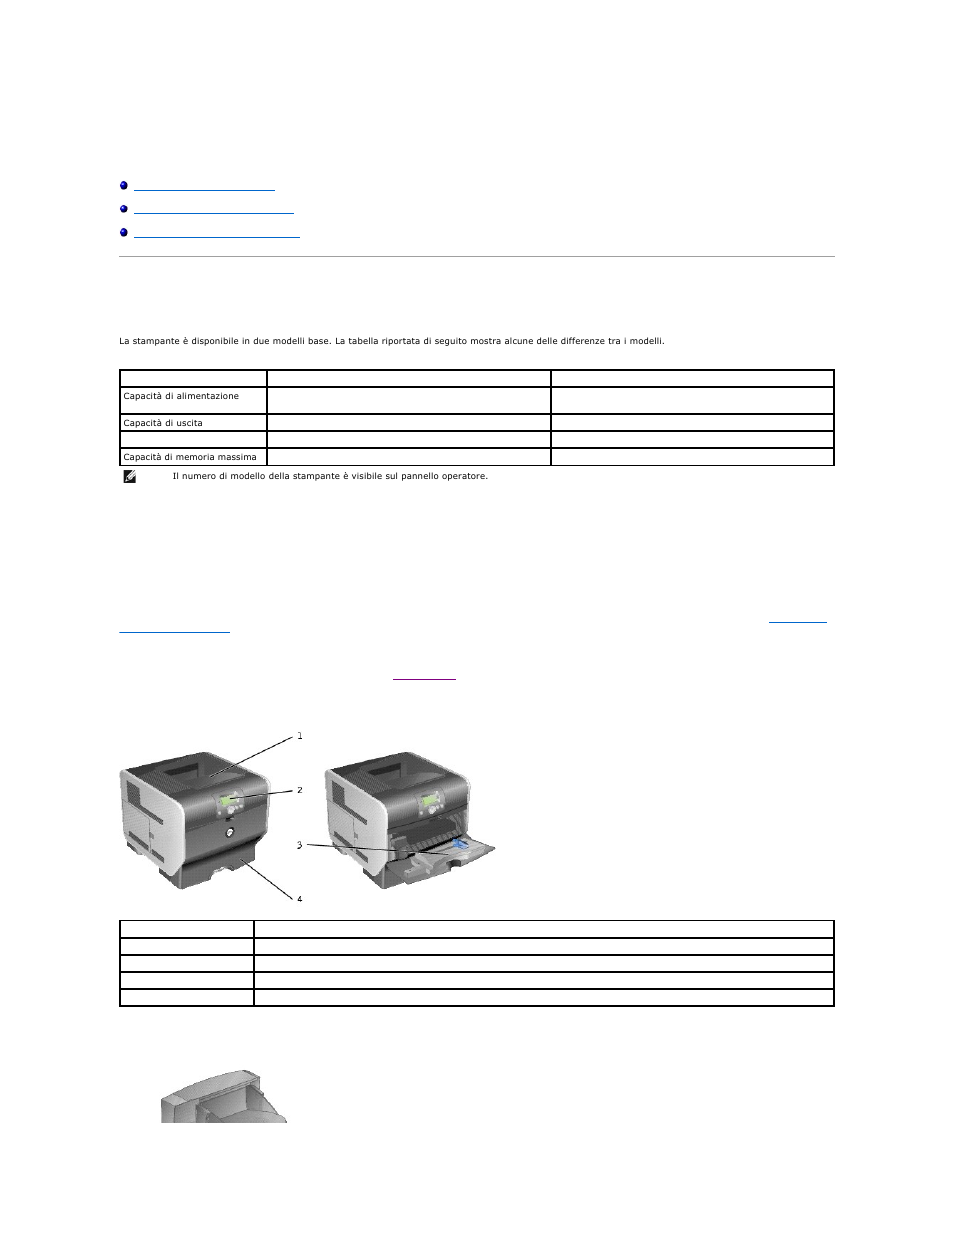 Dell 5210n Mono Laser Printer Manuale d'uso | Pagine: 150